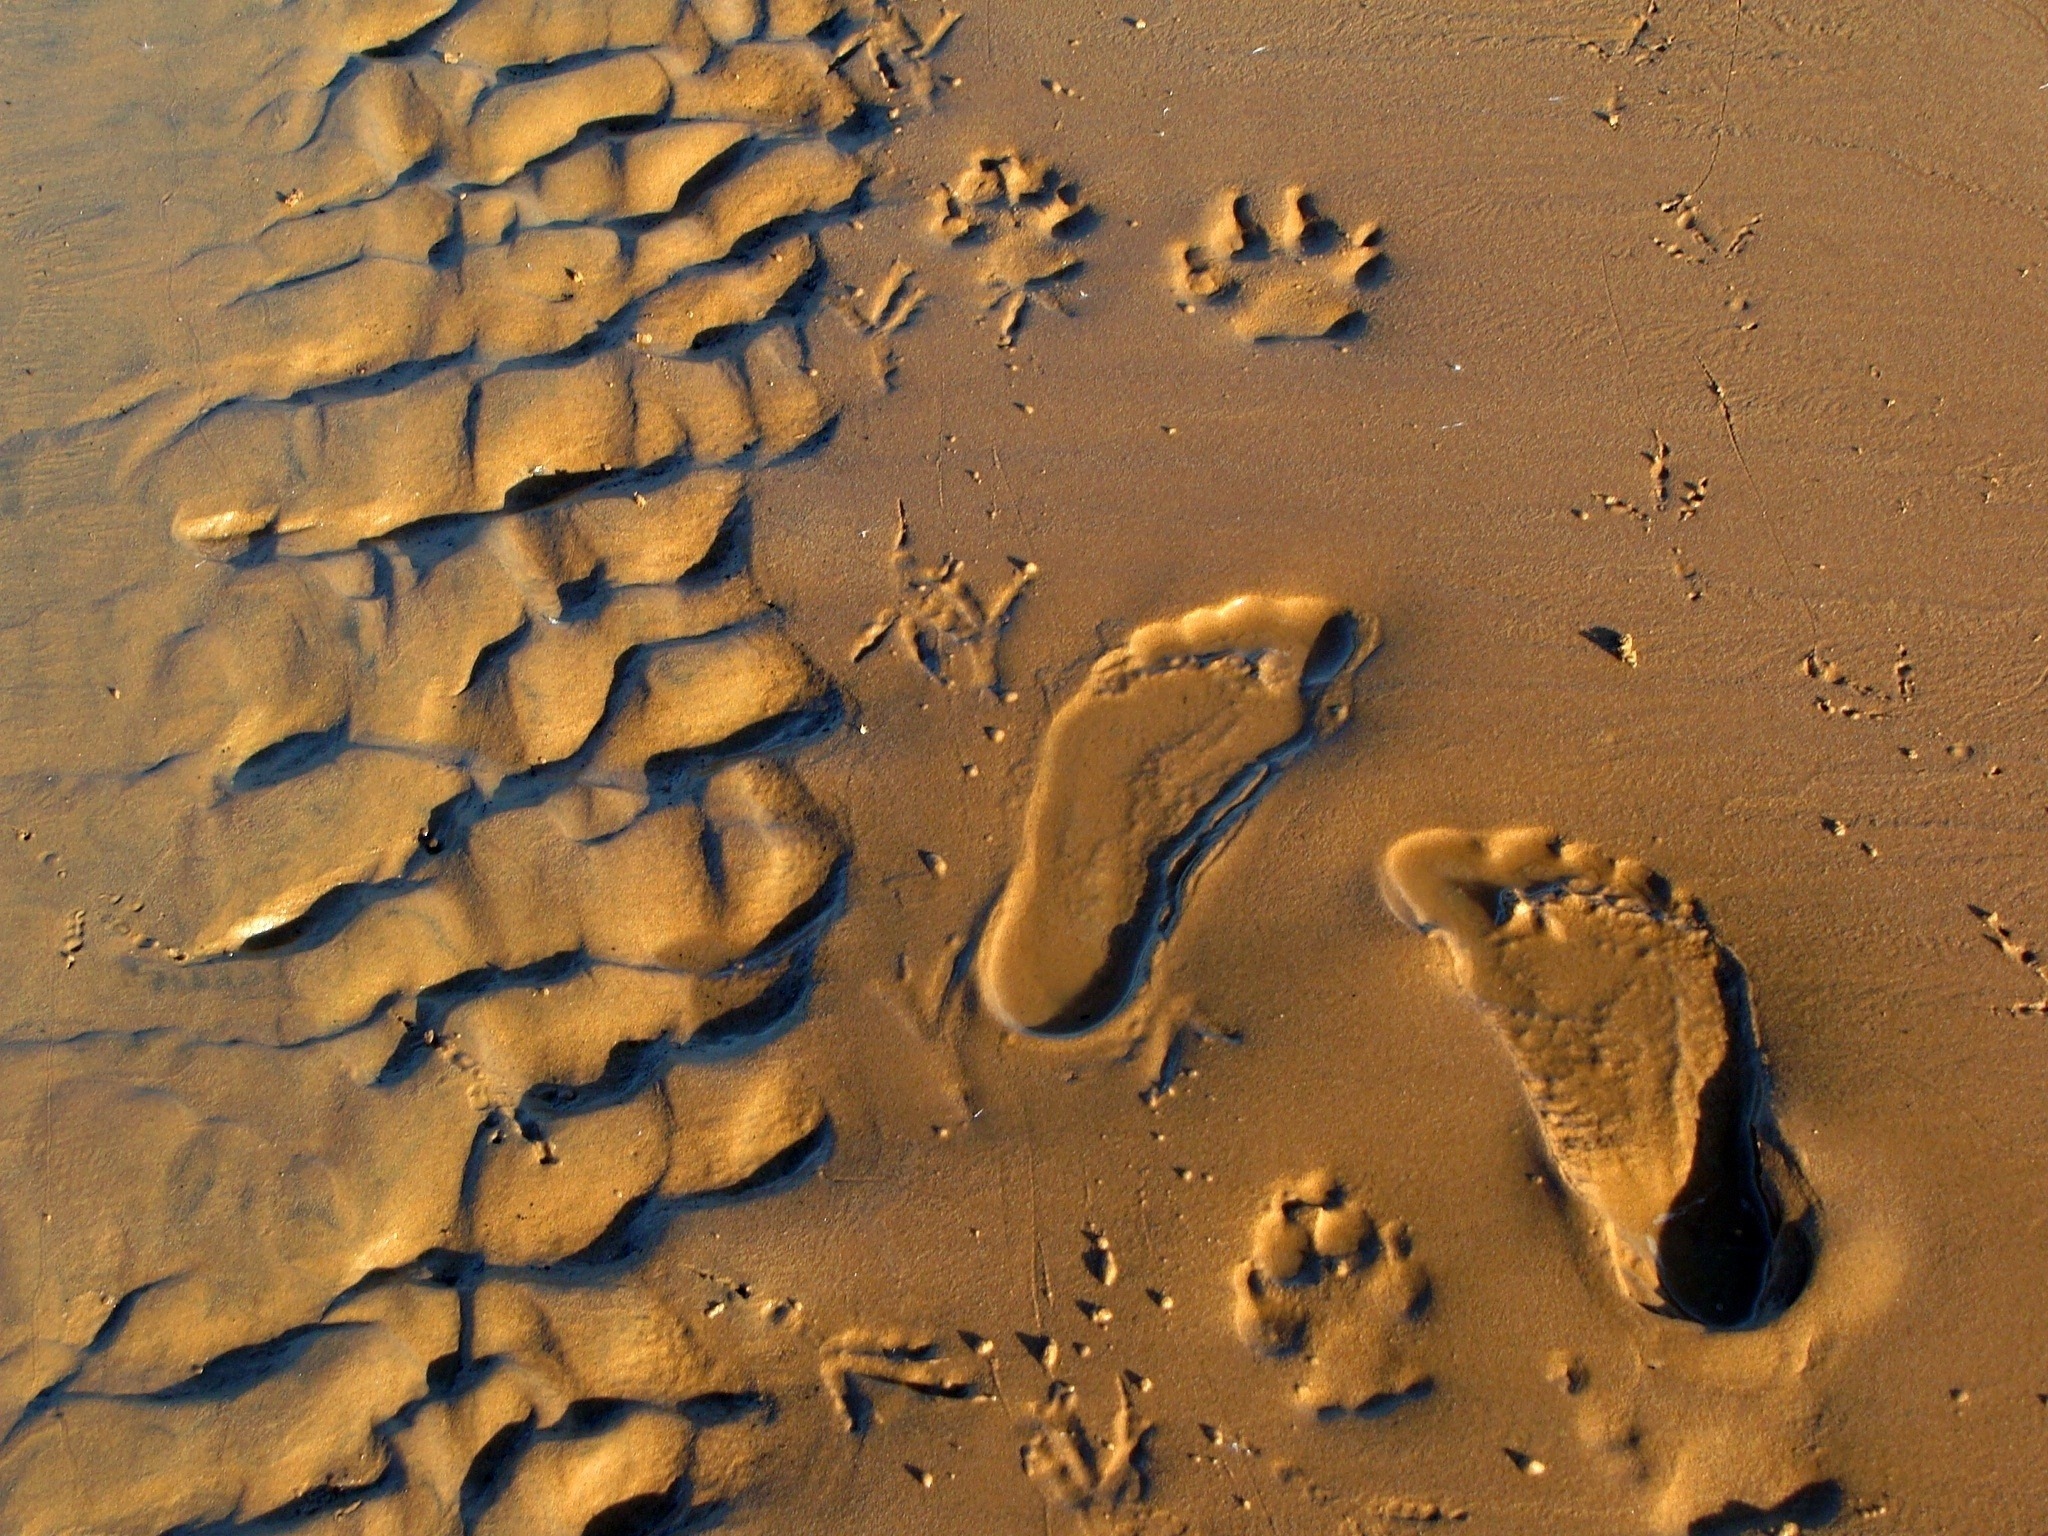 На песке остается след. Следы на песке. Следы на земле. Отпечаток на песке.